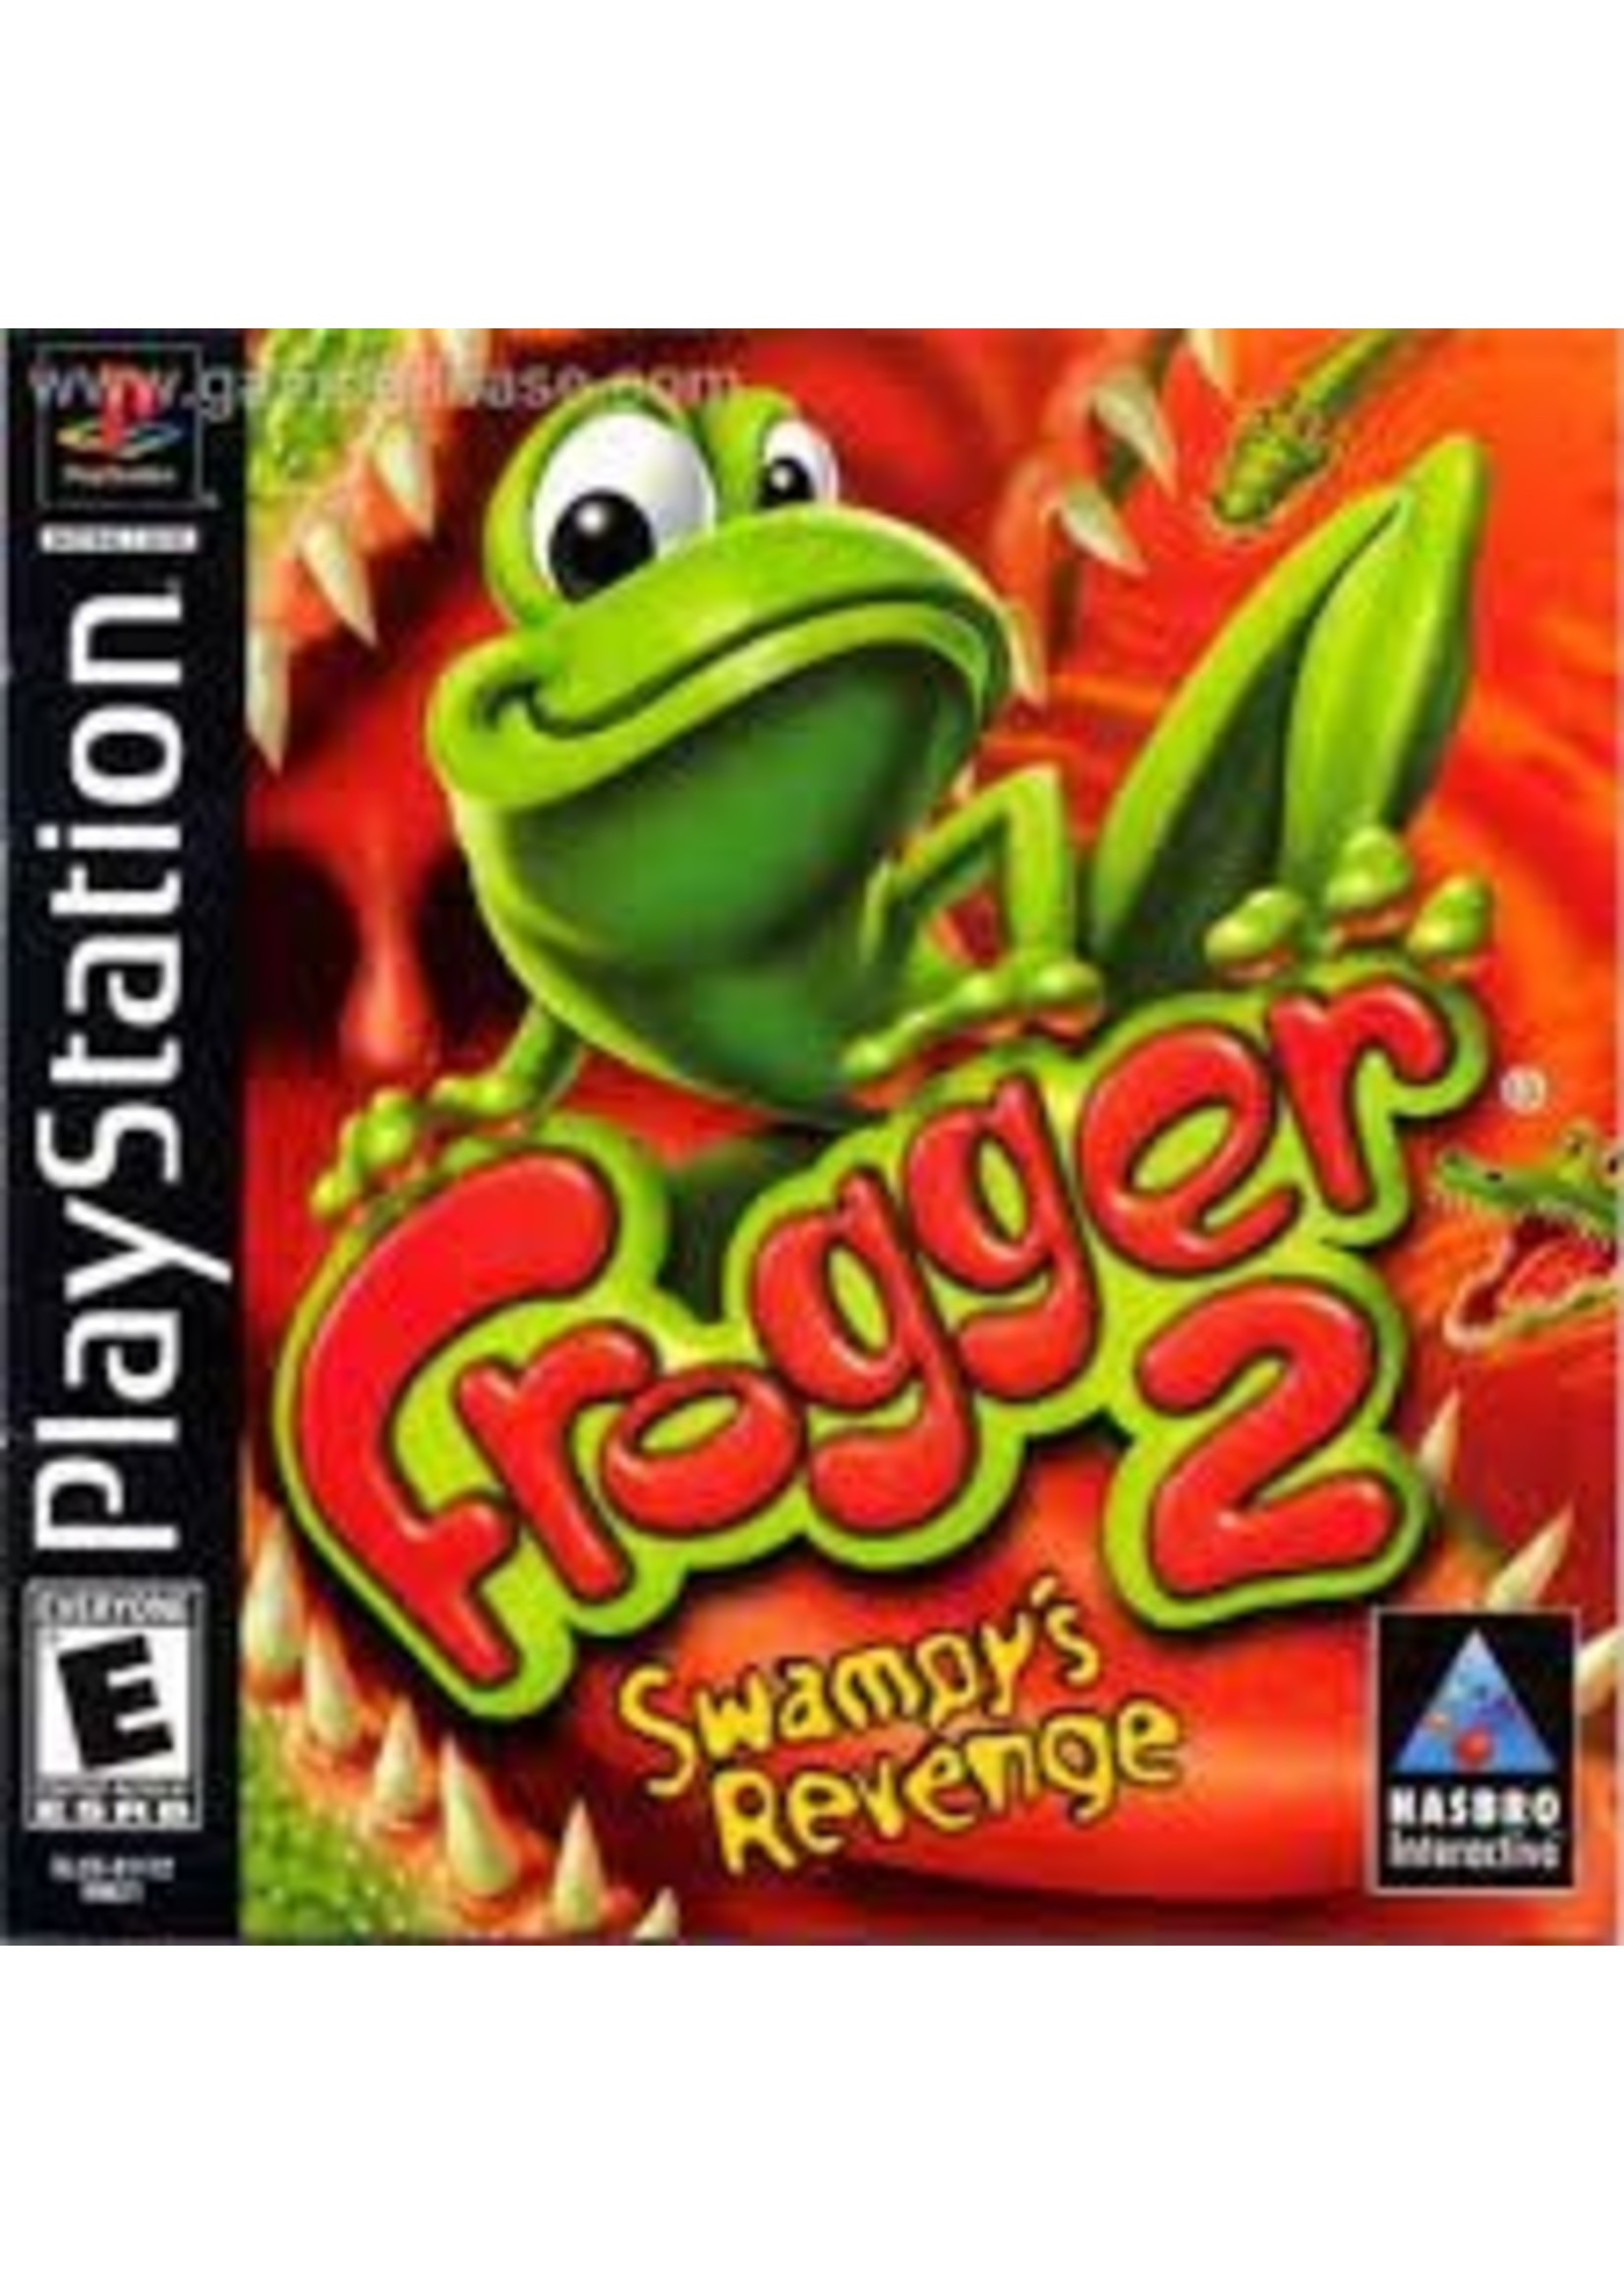 Sony Playstation 1 (PS1) Frogger 2 Swampy's Revenge